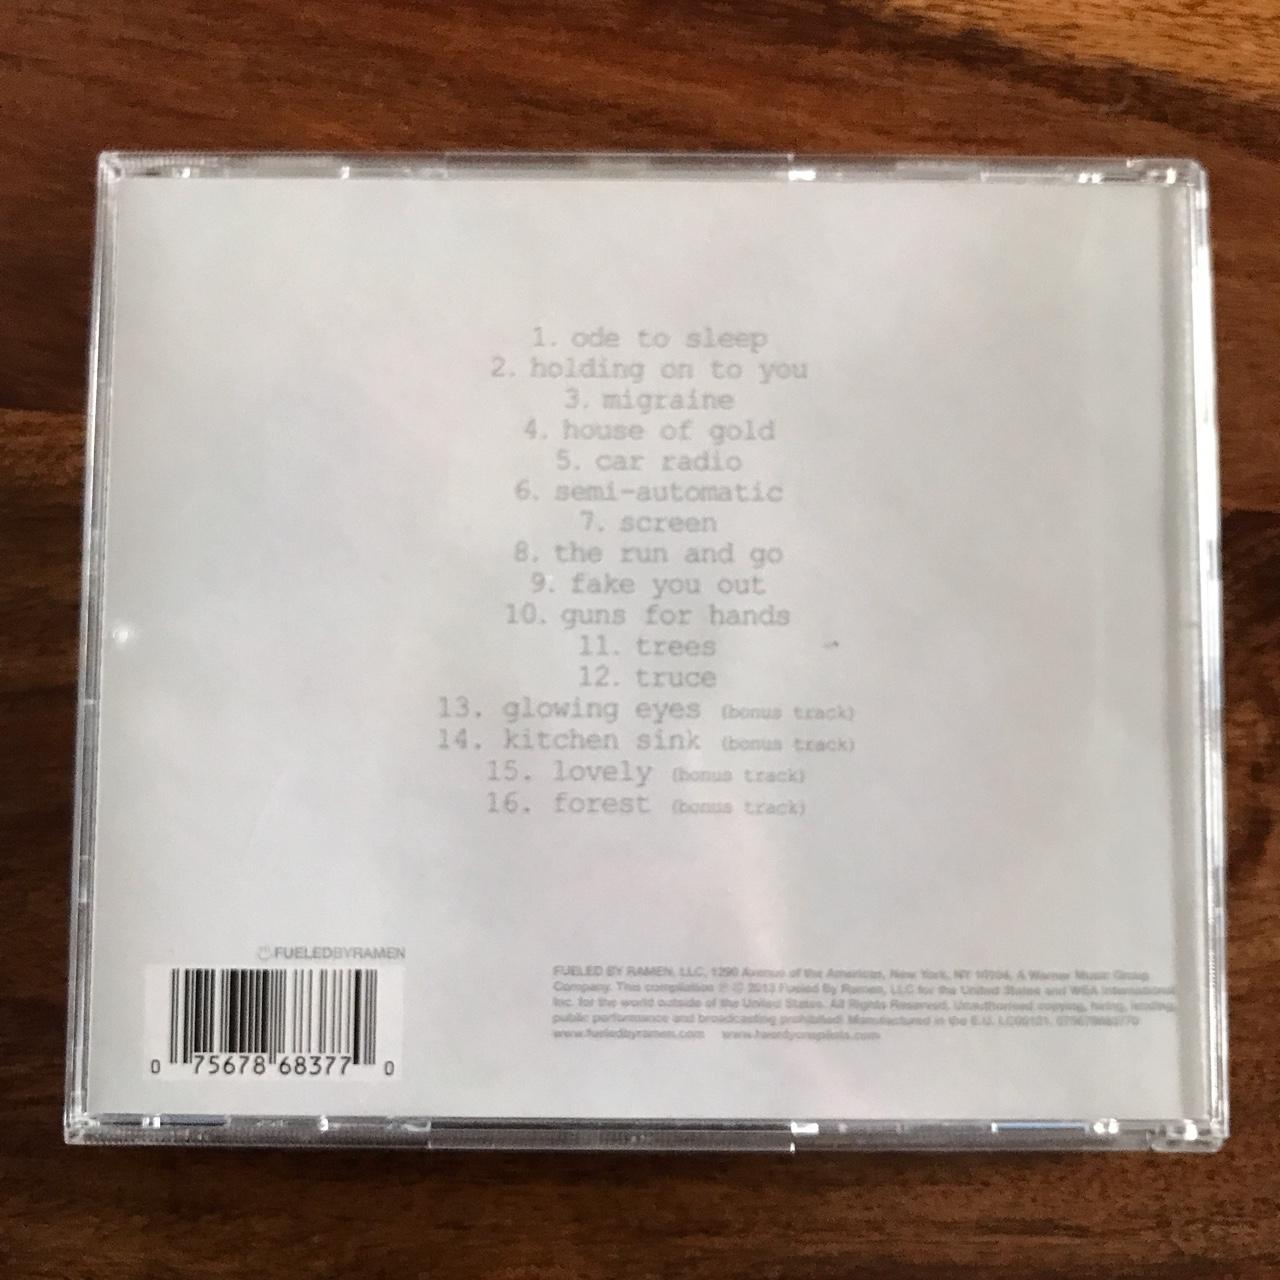 Twenty One Pilots - Vessel CD A really great CD,... - Depop